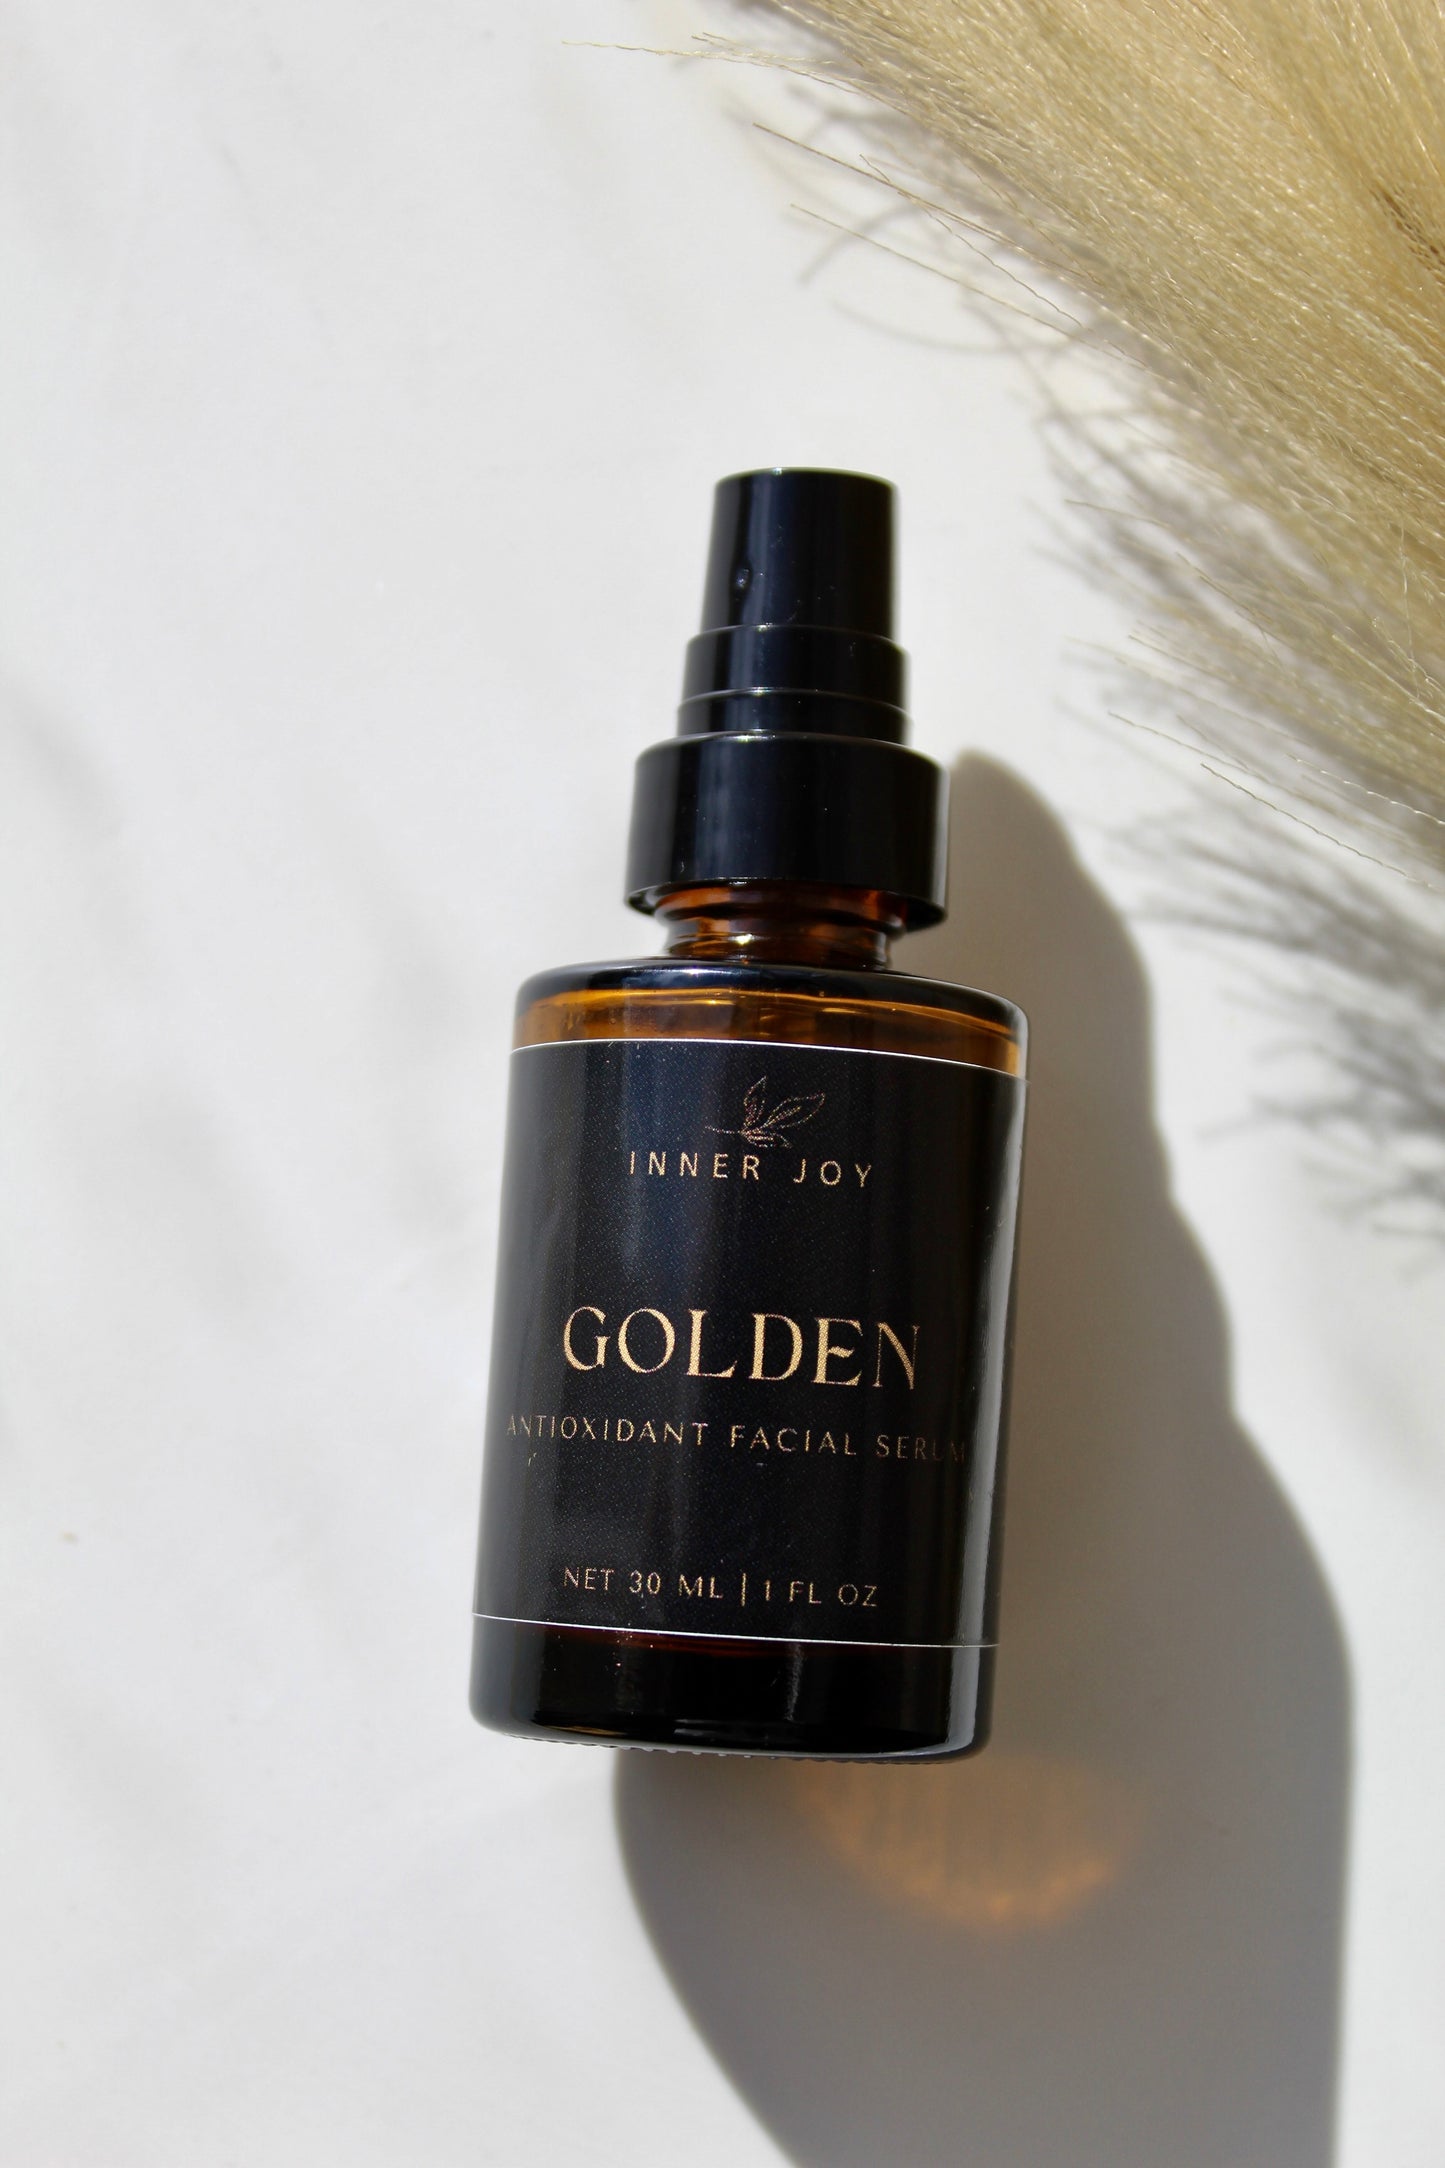 Golden Antioxidant Facial Serum